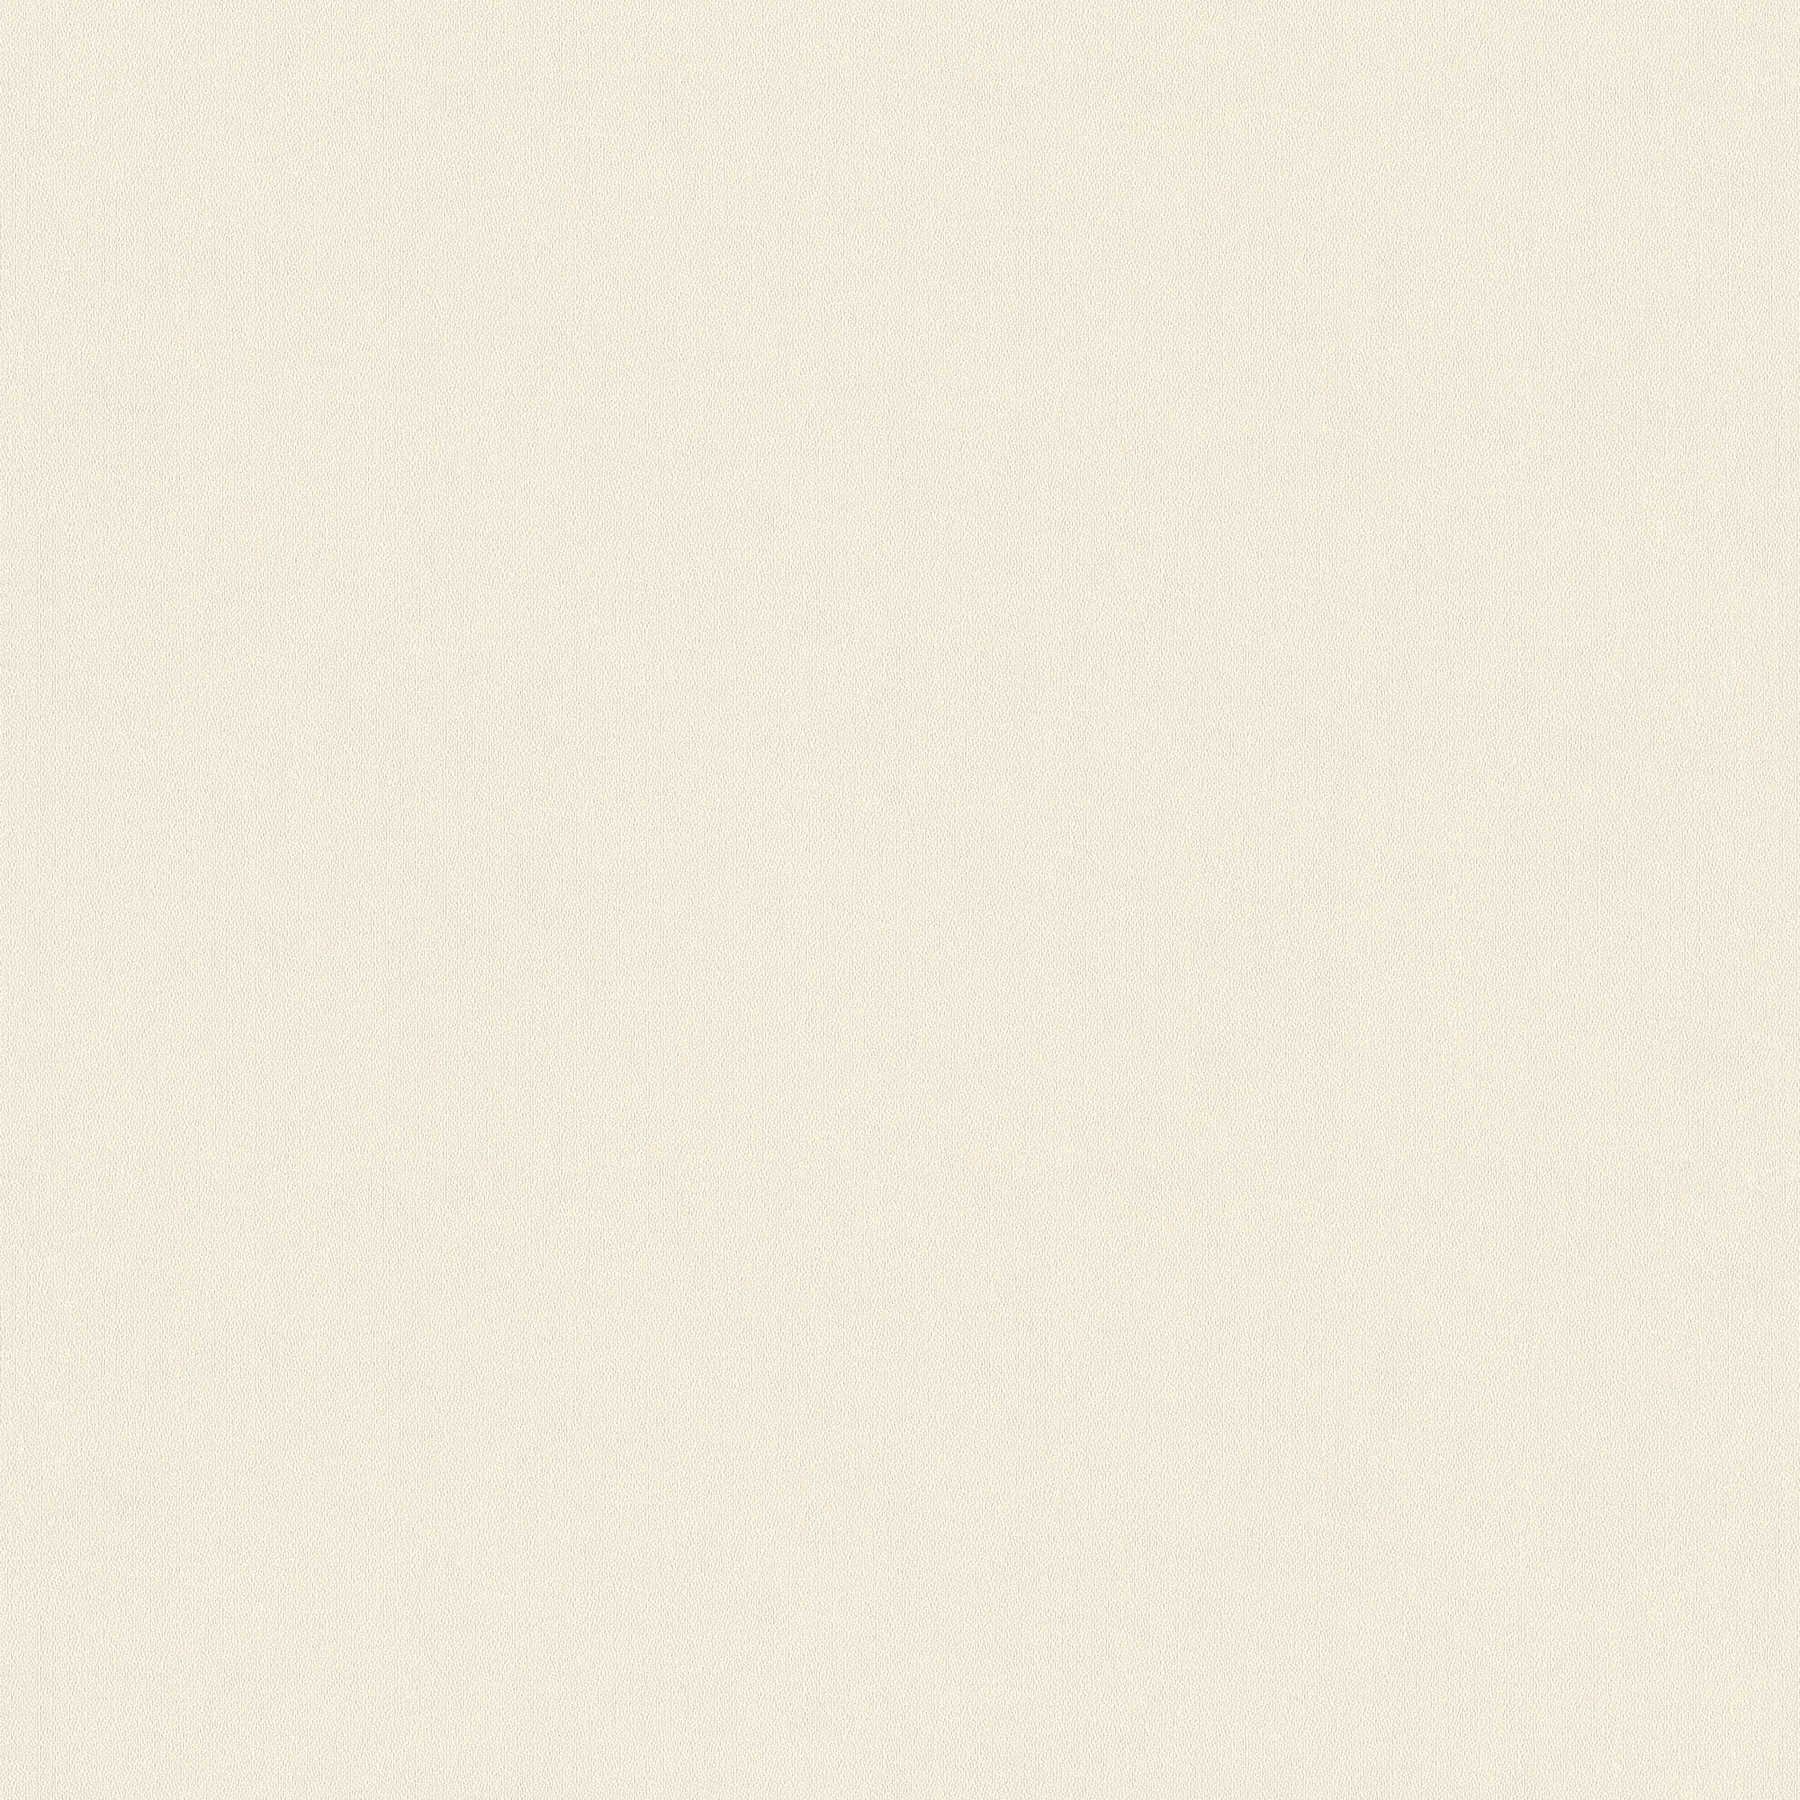 Carta da parati in tessuto non tessuto a tinta unita, doppia larghezza 106 cm - Beige, Crema, Grigio
